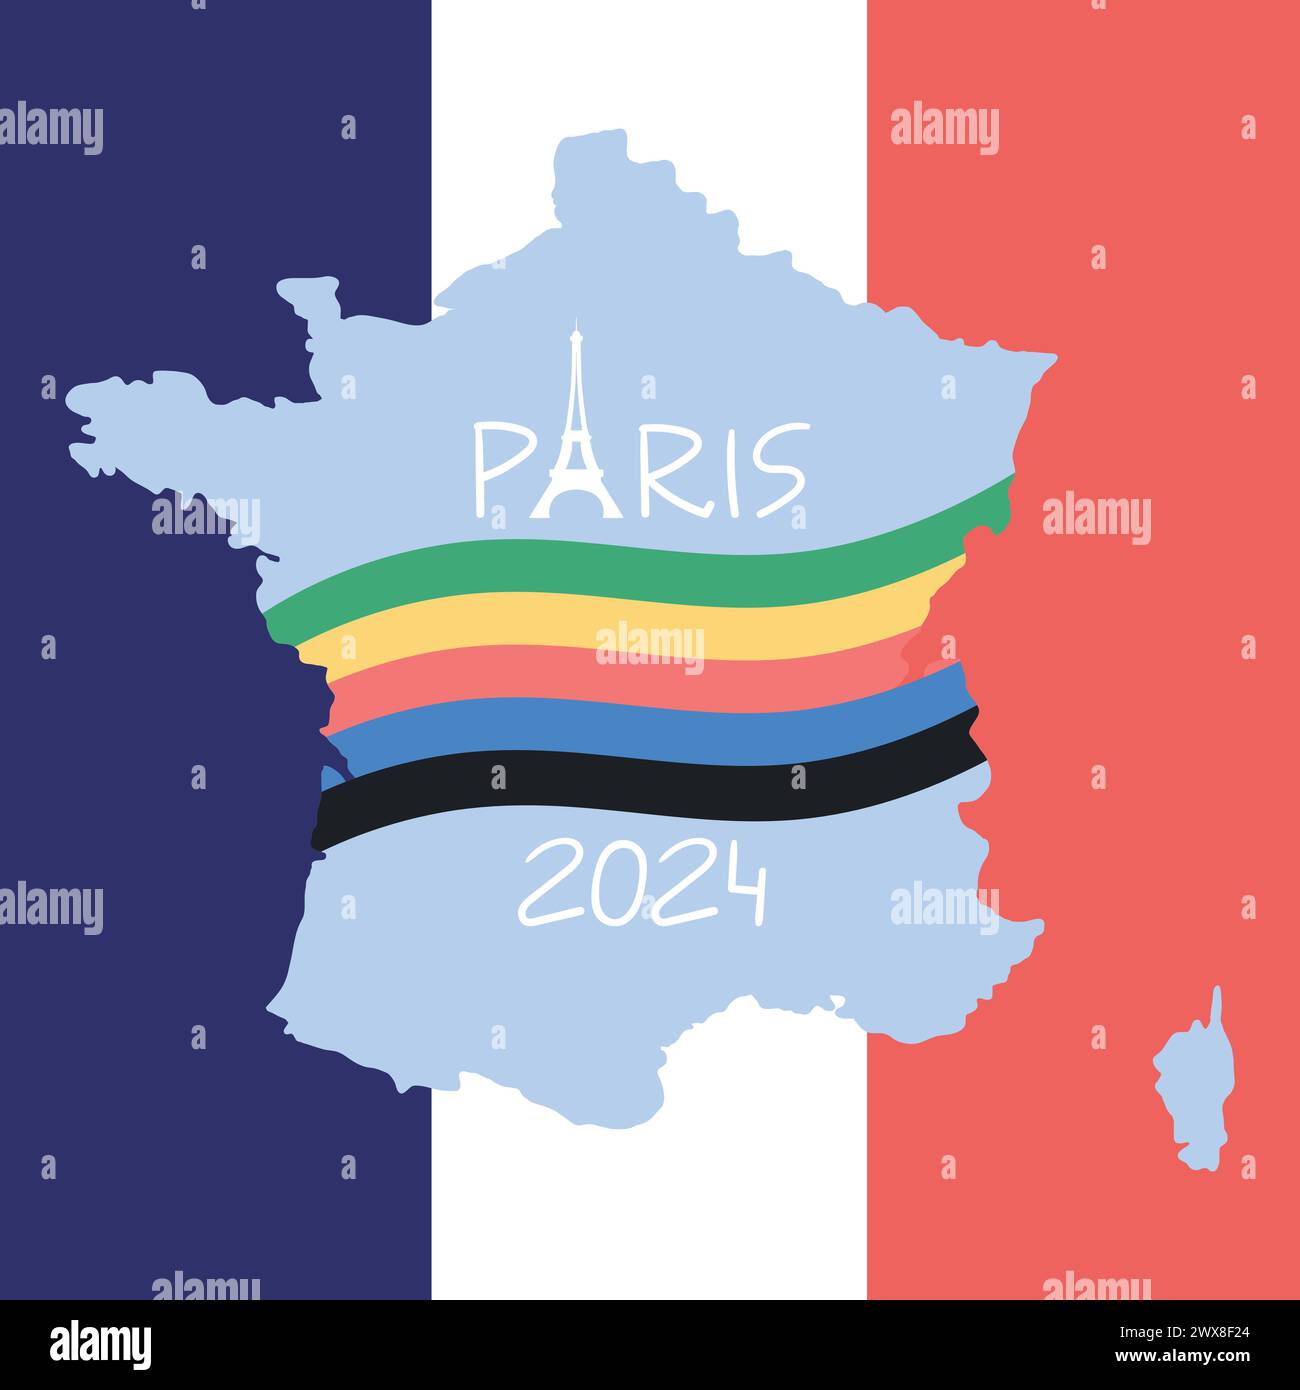 Design dei giochi sportivi olimpici di Parigi 2024. Silhouette e bandiera della Torre Eiffel nei colori degli anelli olimpici. Sfondo nei colori della bandiera francese. Illustrazione vettoriale Illustrazione Vettoriale